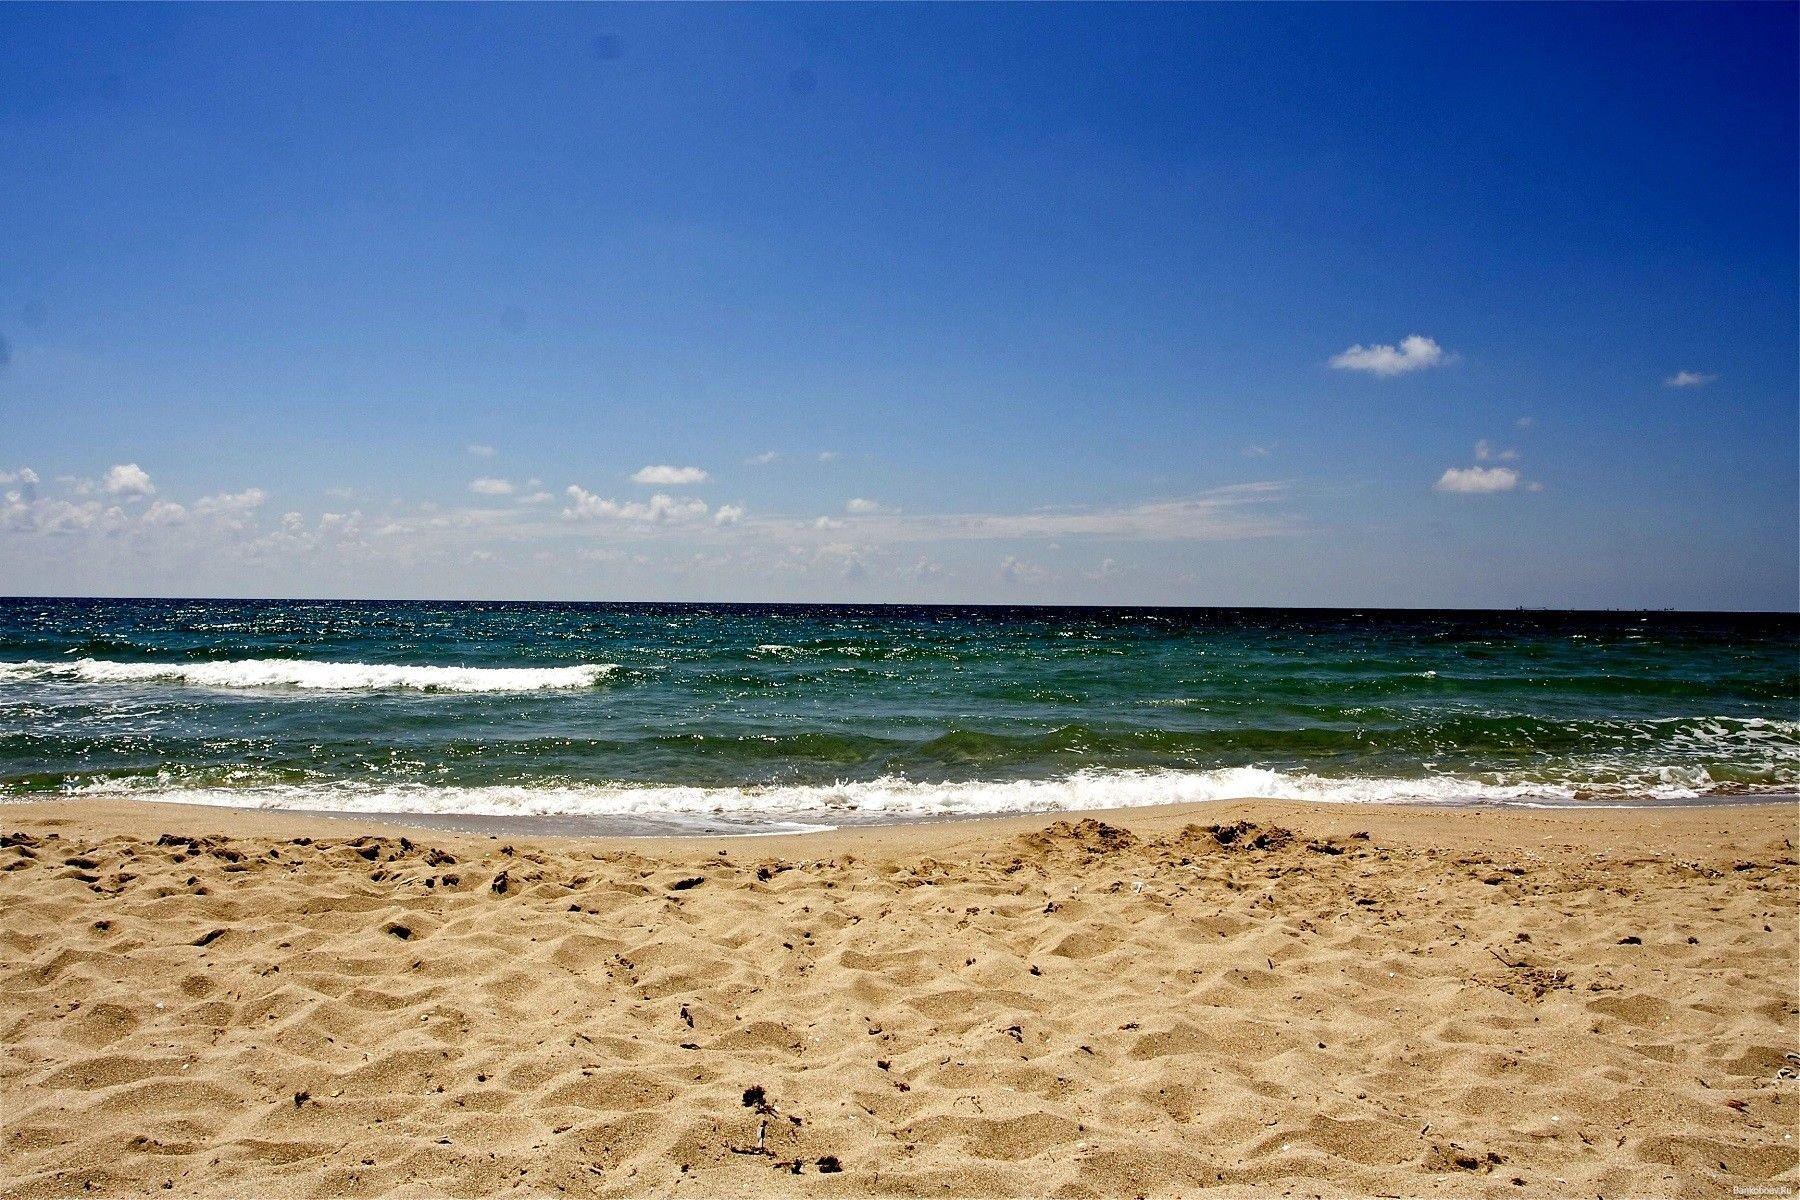 Море лоб. Море пляж Анапа Джемете. Песчаные дюны Джемете Анапа. Пляж Джемете Анапа. Песчаные пляжи Джемете дюны.